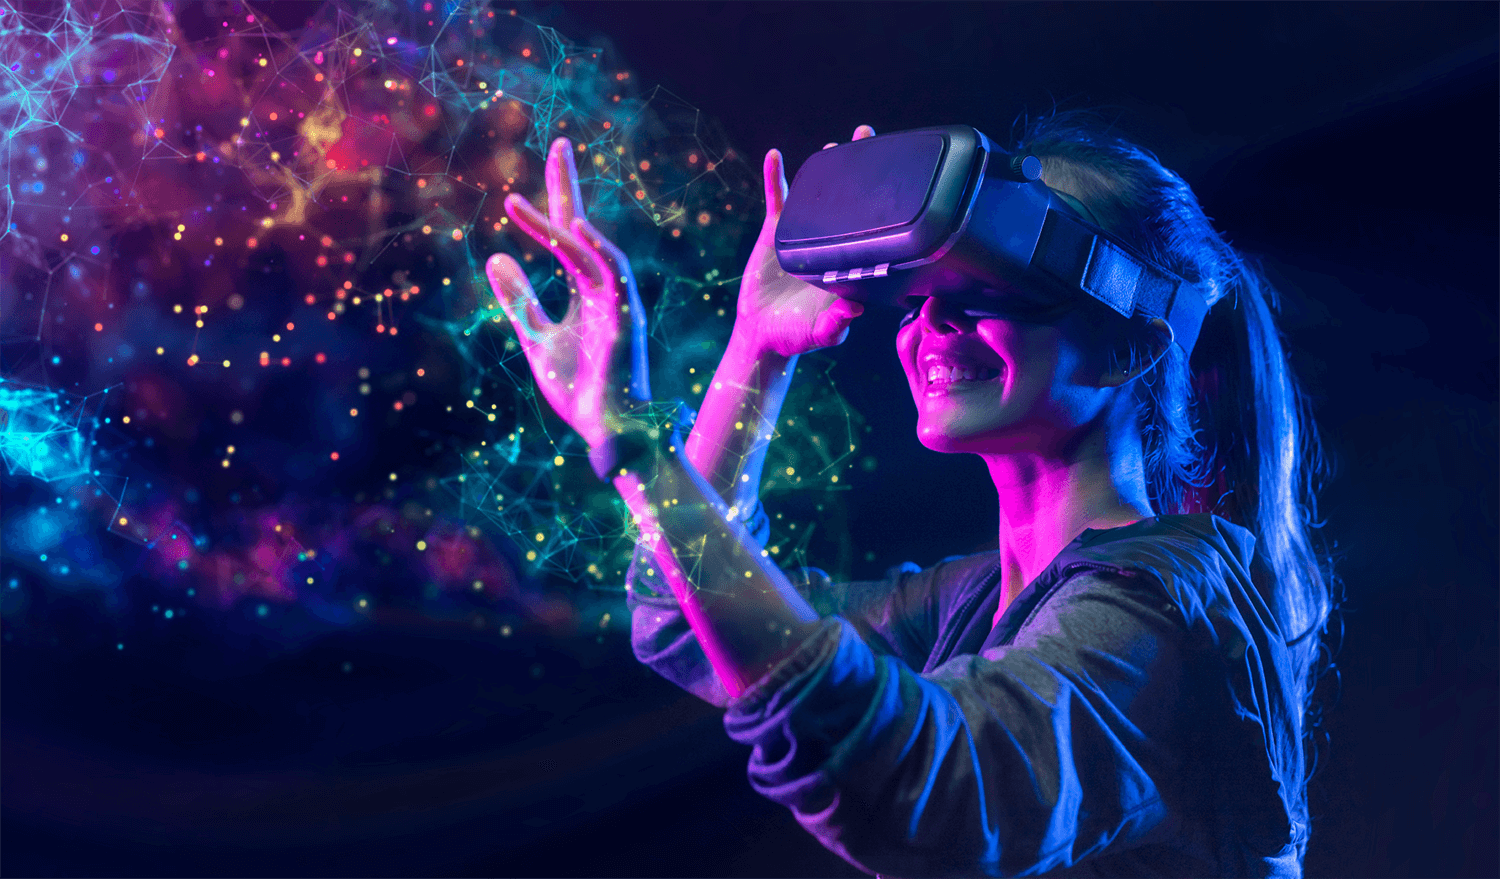 图片展示了一位女士戴着虚拟现实头盔，似乎在体验或操控虚拟世界中的事物，周围有彩色光点和线条构成的网络。